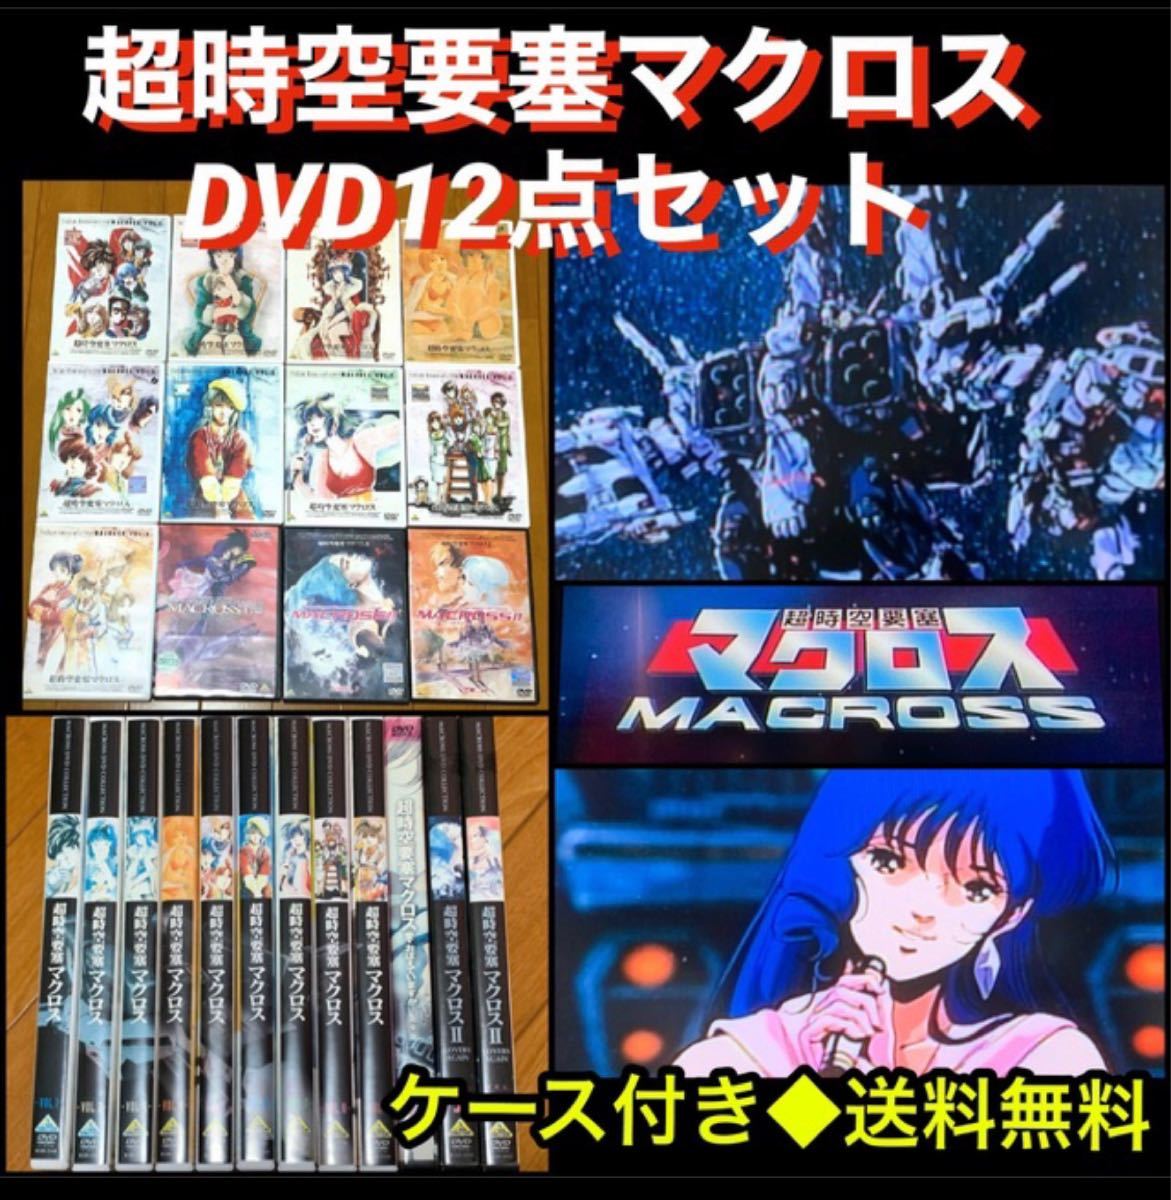 【送料無料】超時空要塞 マクロス DVD 12点 セット